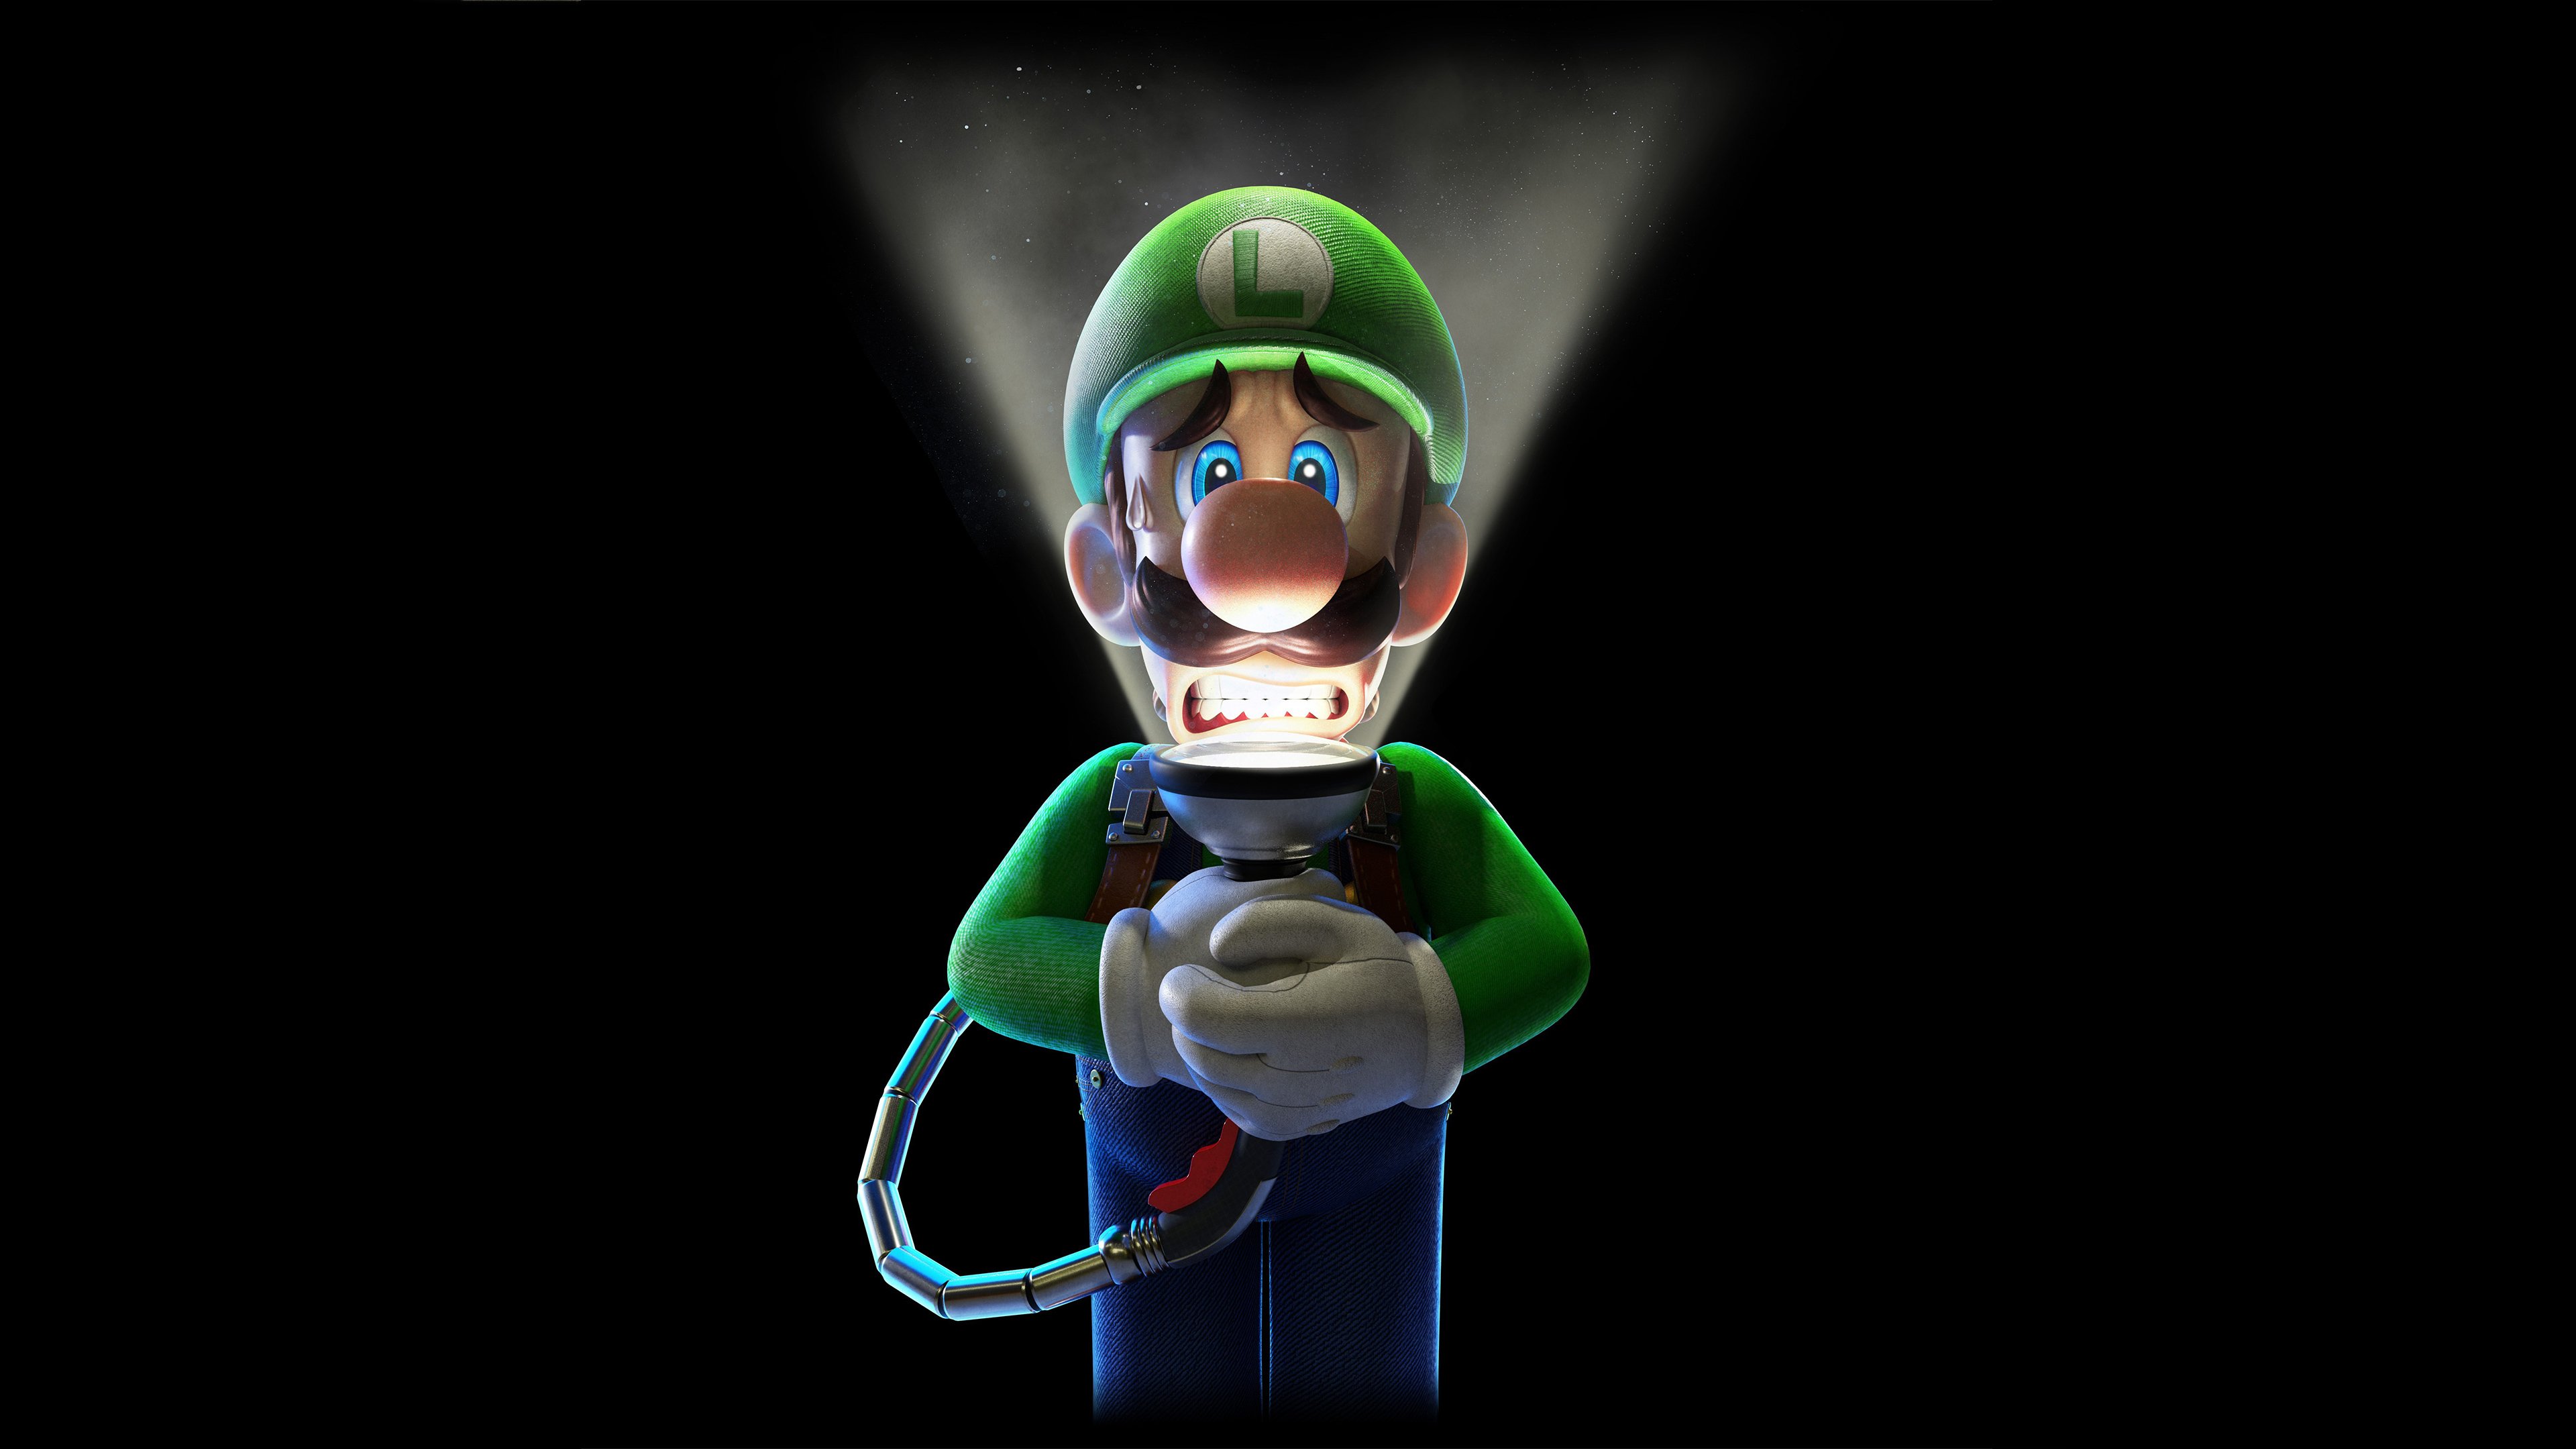 Luigis Mansion 3 HD Games, 4k Wallpaper, Image